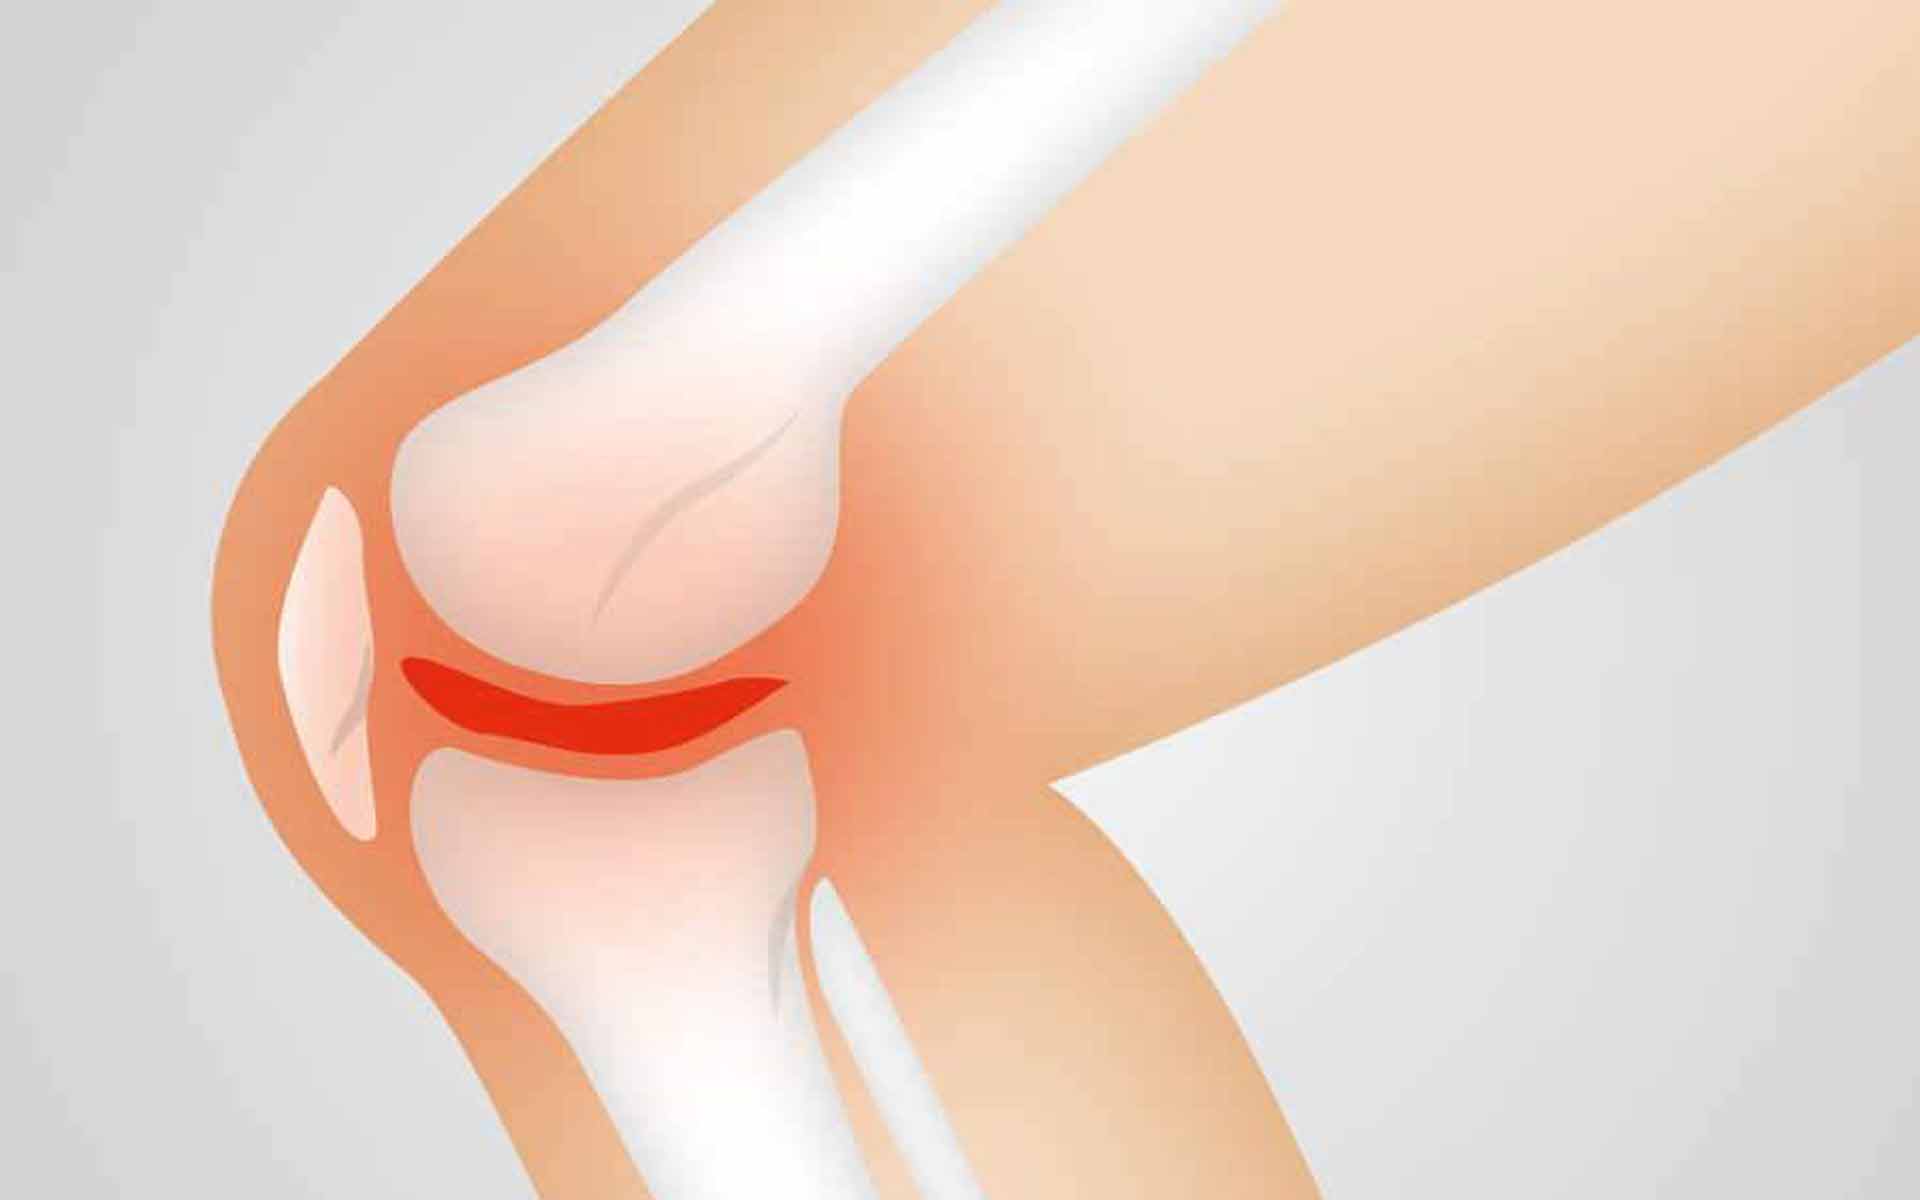 Síntomas, causas y factores de riesgo en esguinces de rodilla